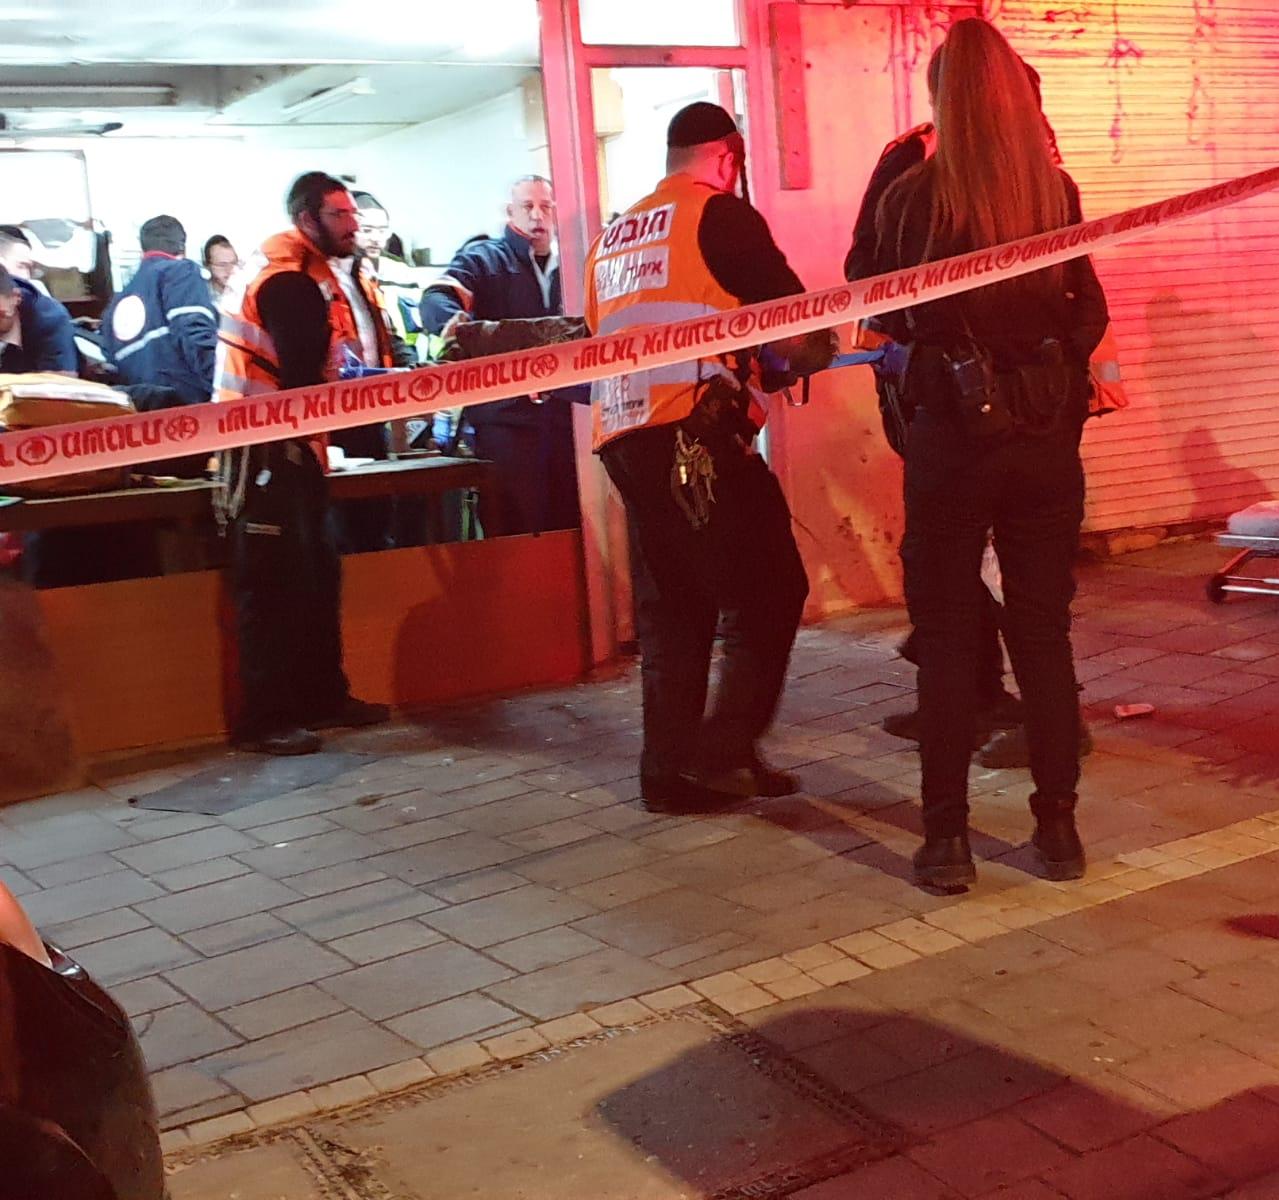 זירת האירוע בחיפה, בו נהרג גבר ואישה נפצעה באורח בינוני בחנות נעולה. (צילום: איחוד הצלה)